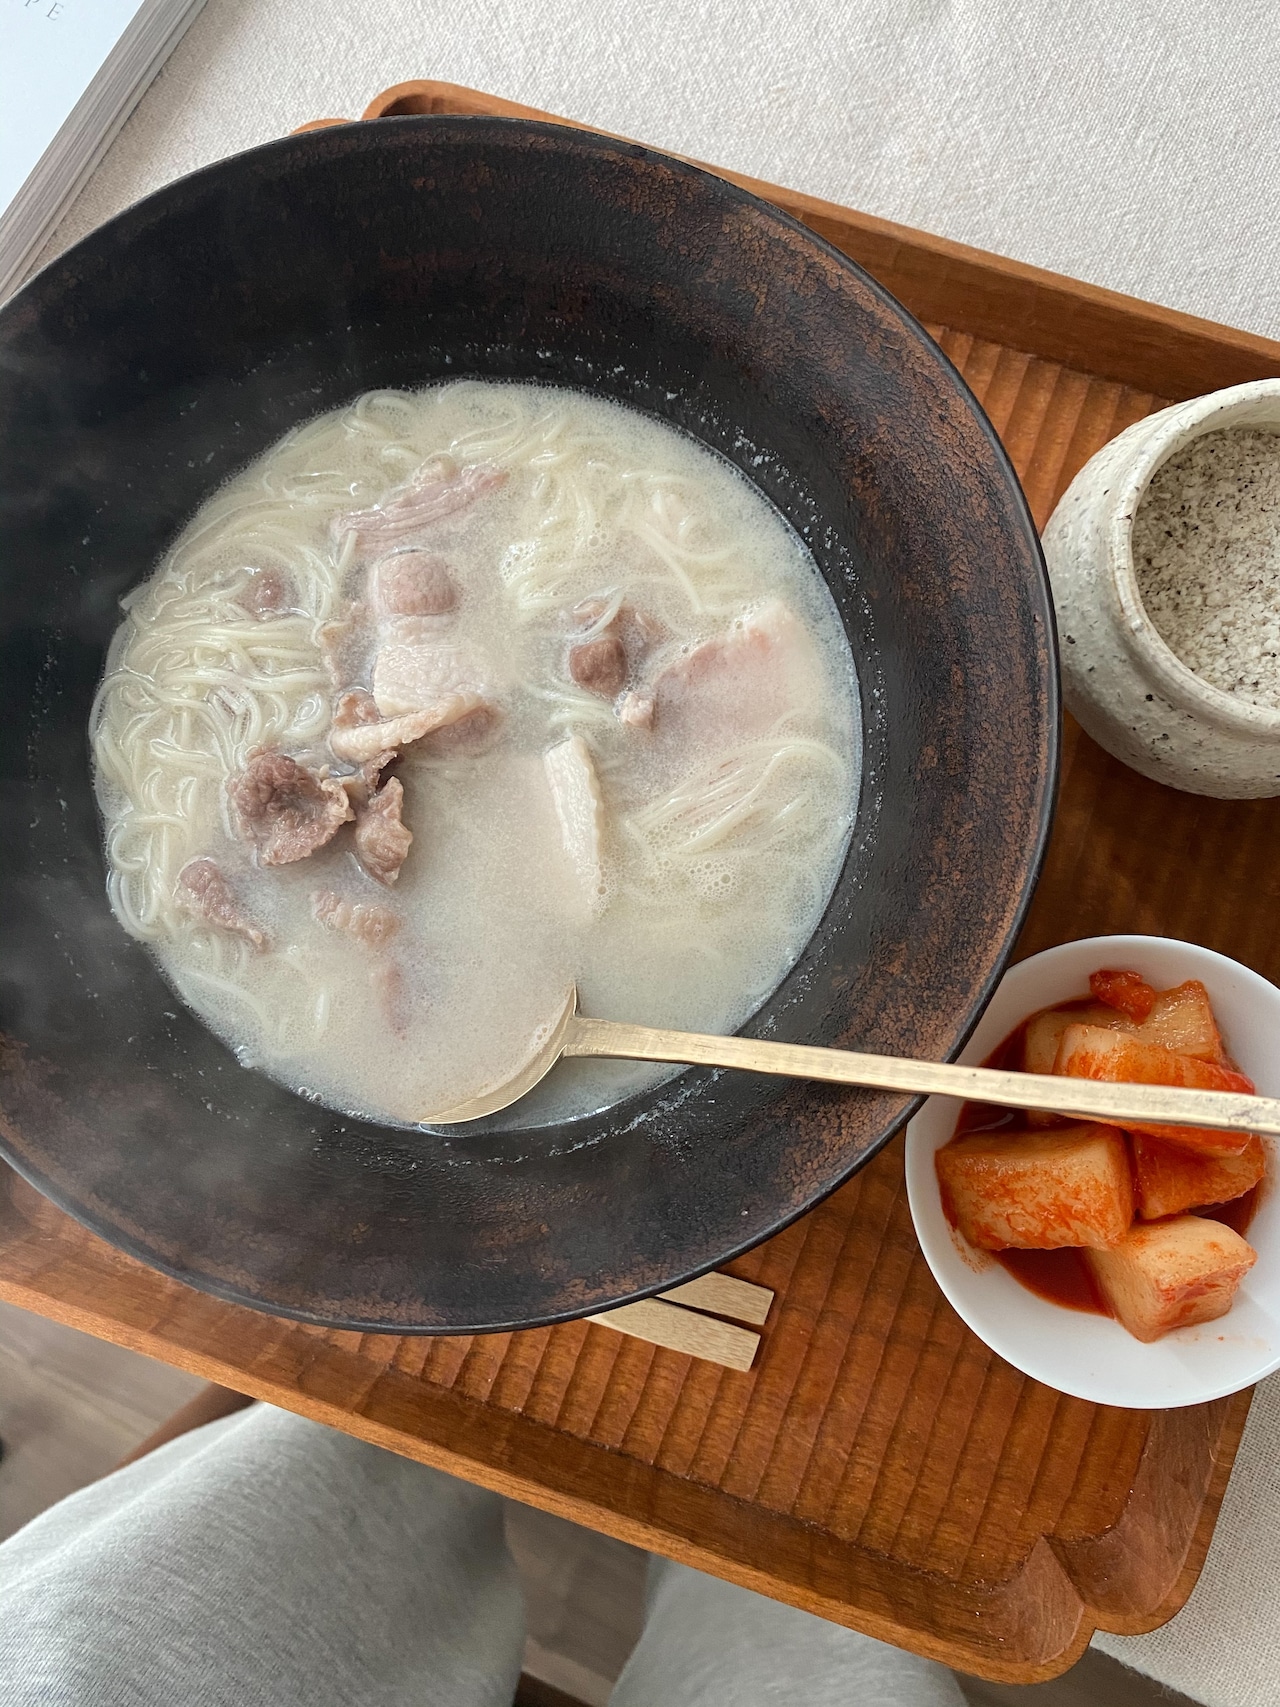 「ソルロンタン」牛骨で作った濃厚な白濁スープにそうめんとお肉を入れて食べるスープ